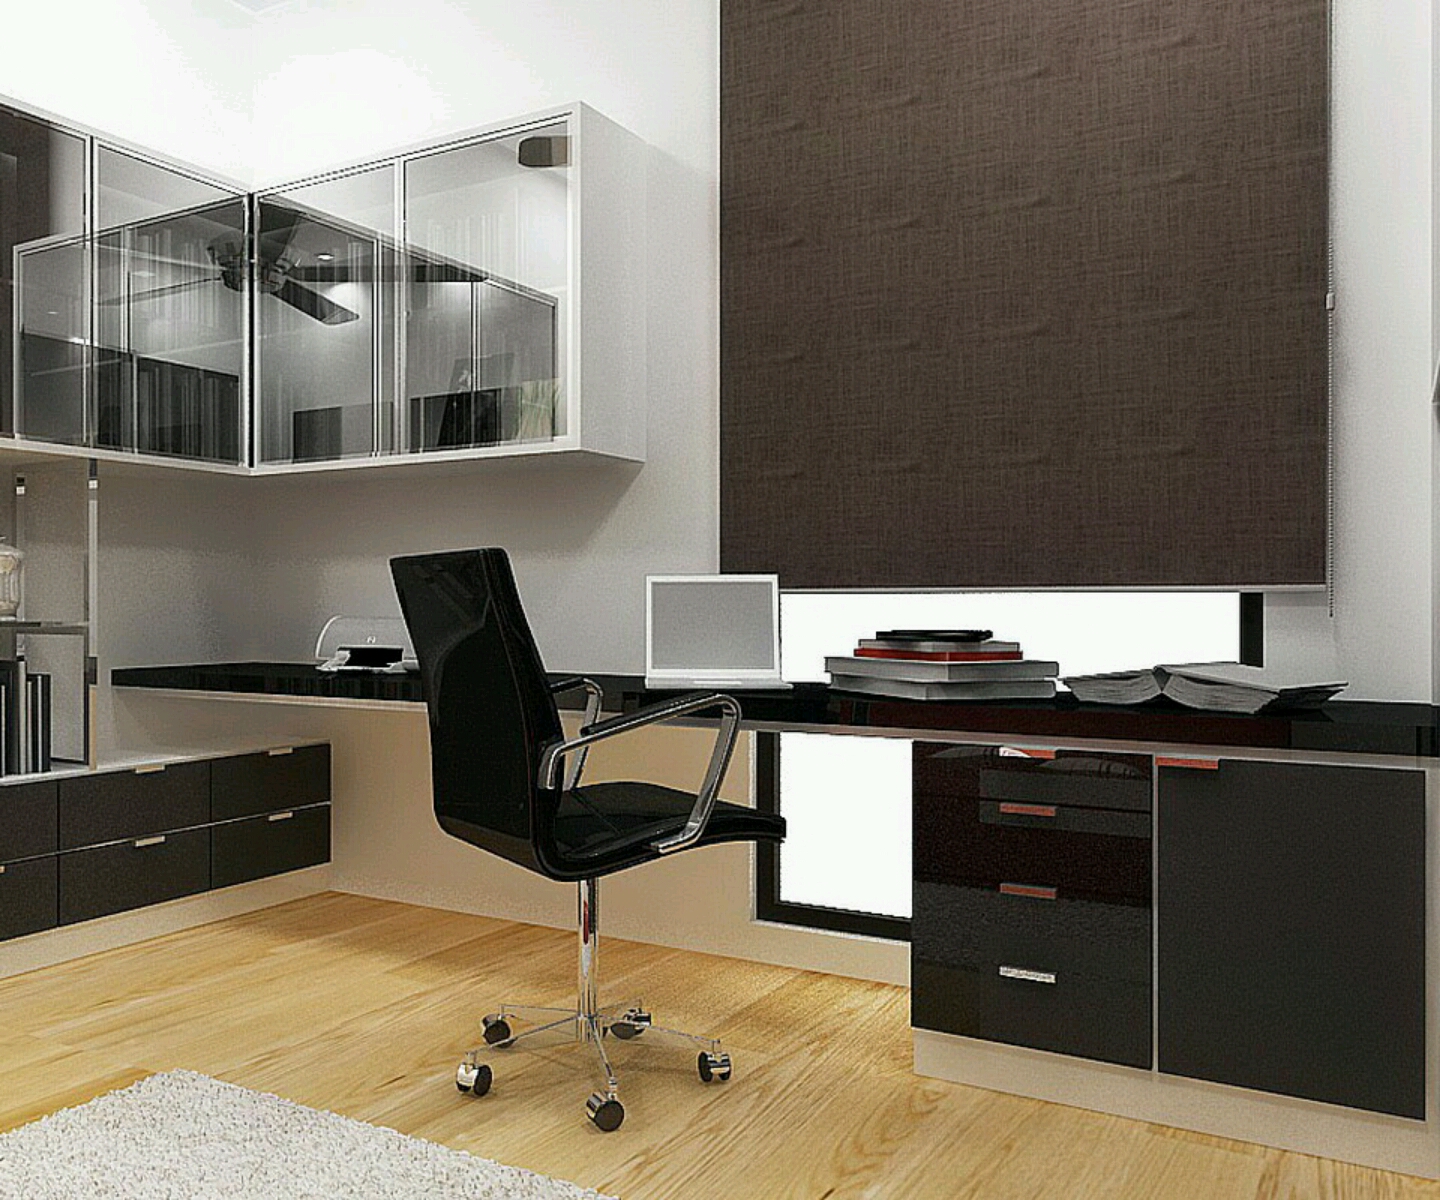 Study rooms furnitures designs ideas. | Interior Design